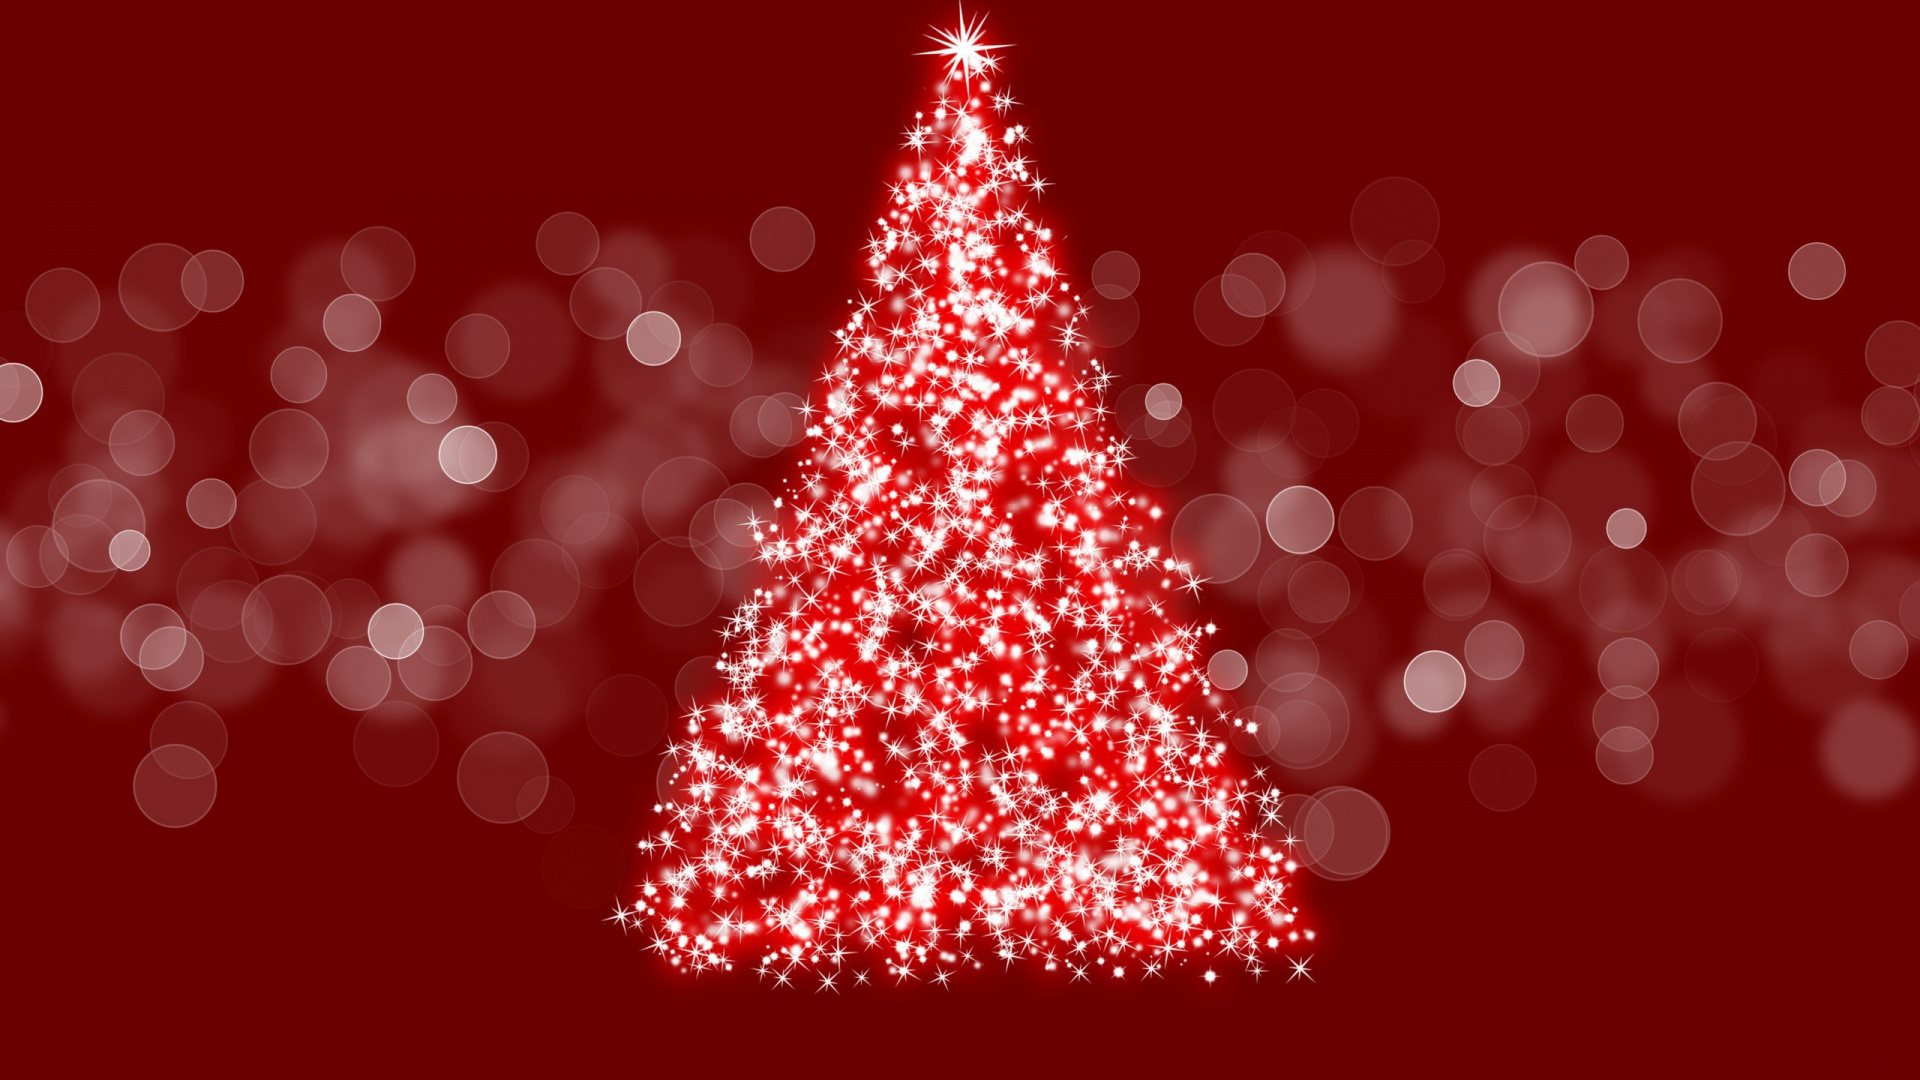 Weihnachten, Weihnachtsbaum, Weihnachtsdekoration, Baum, Christmas Ornament. Wallpaper in 1920x1080 Resolution